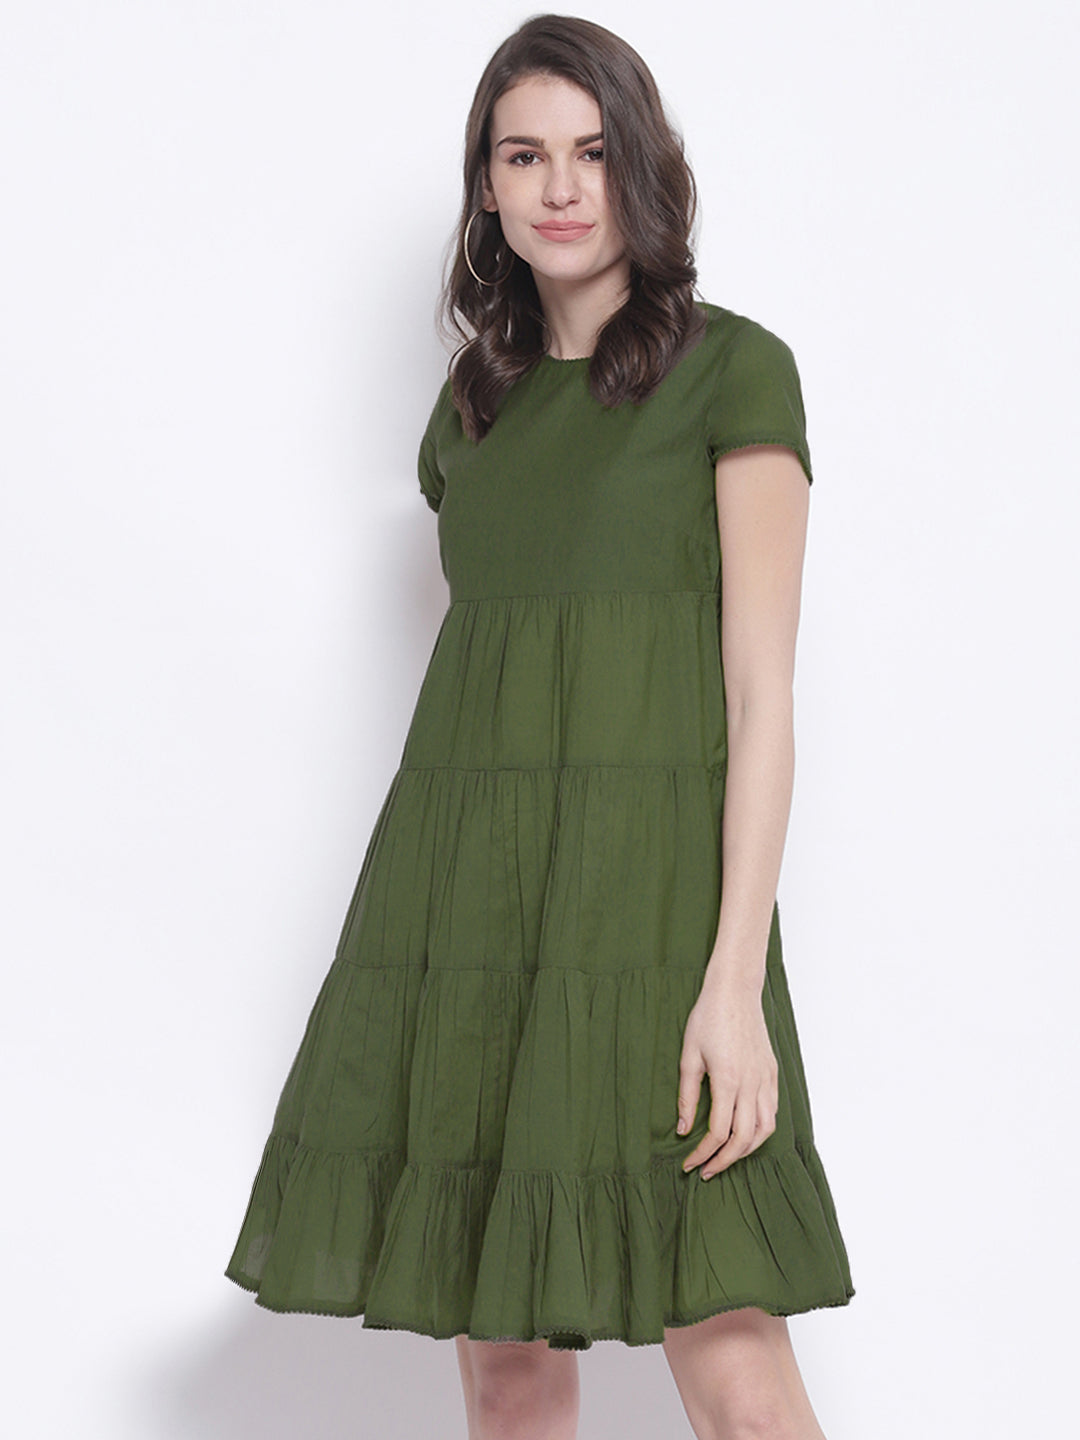 Olive Short A-line Dress